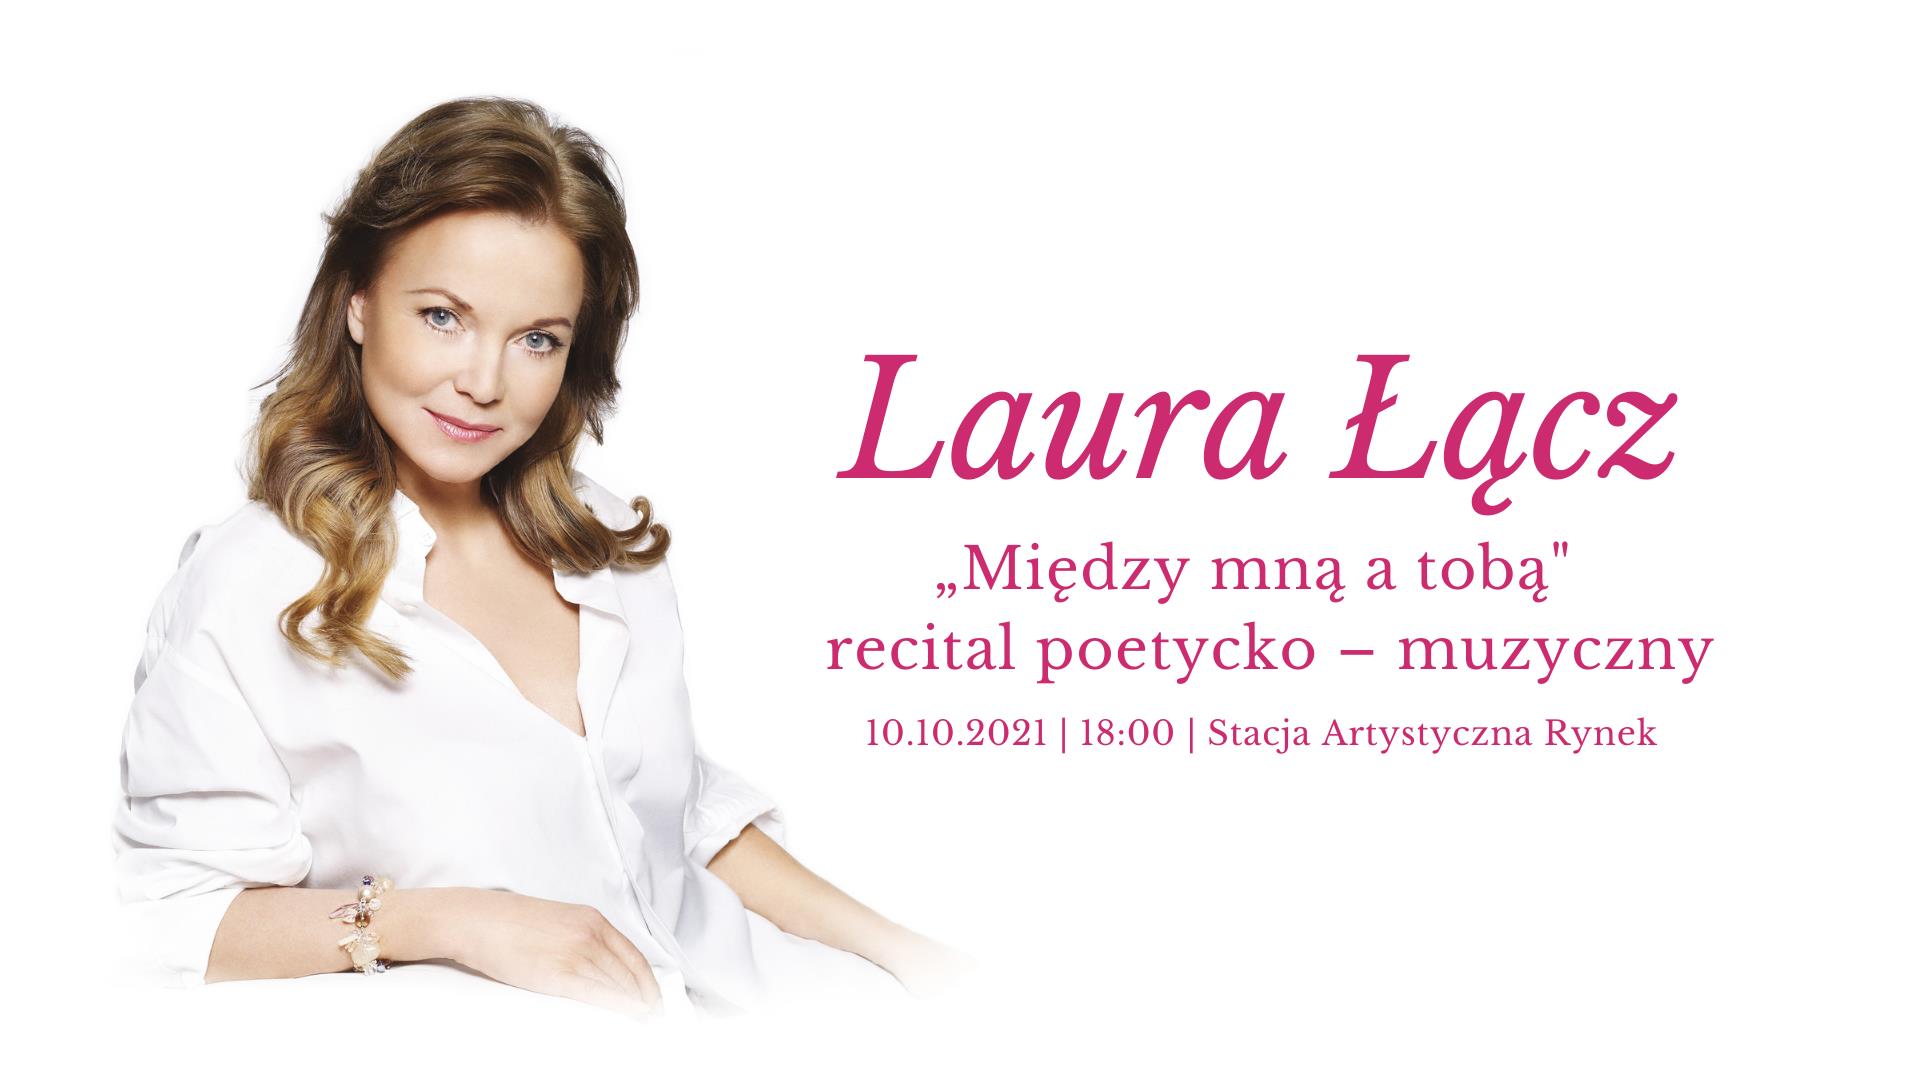 Między mną a tobą" – recital poetycko-muzyczny w wykonaniu Laury Łącz